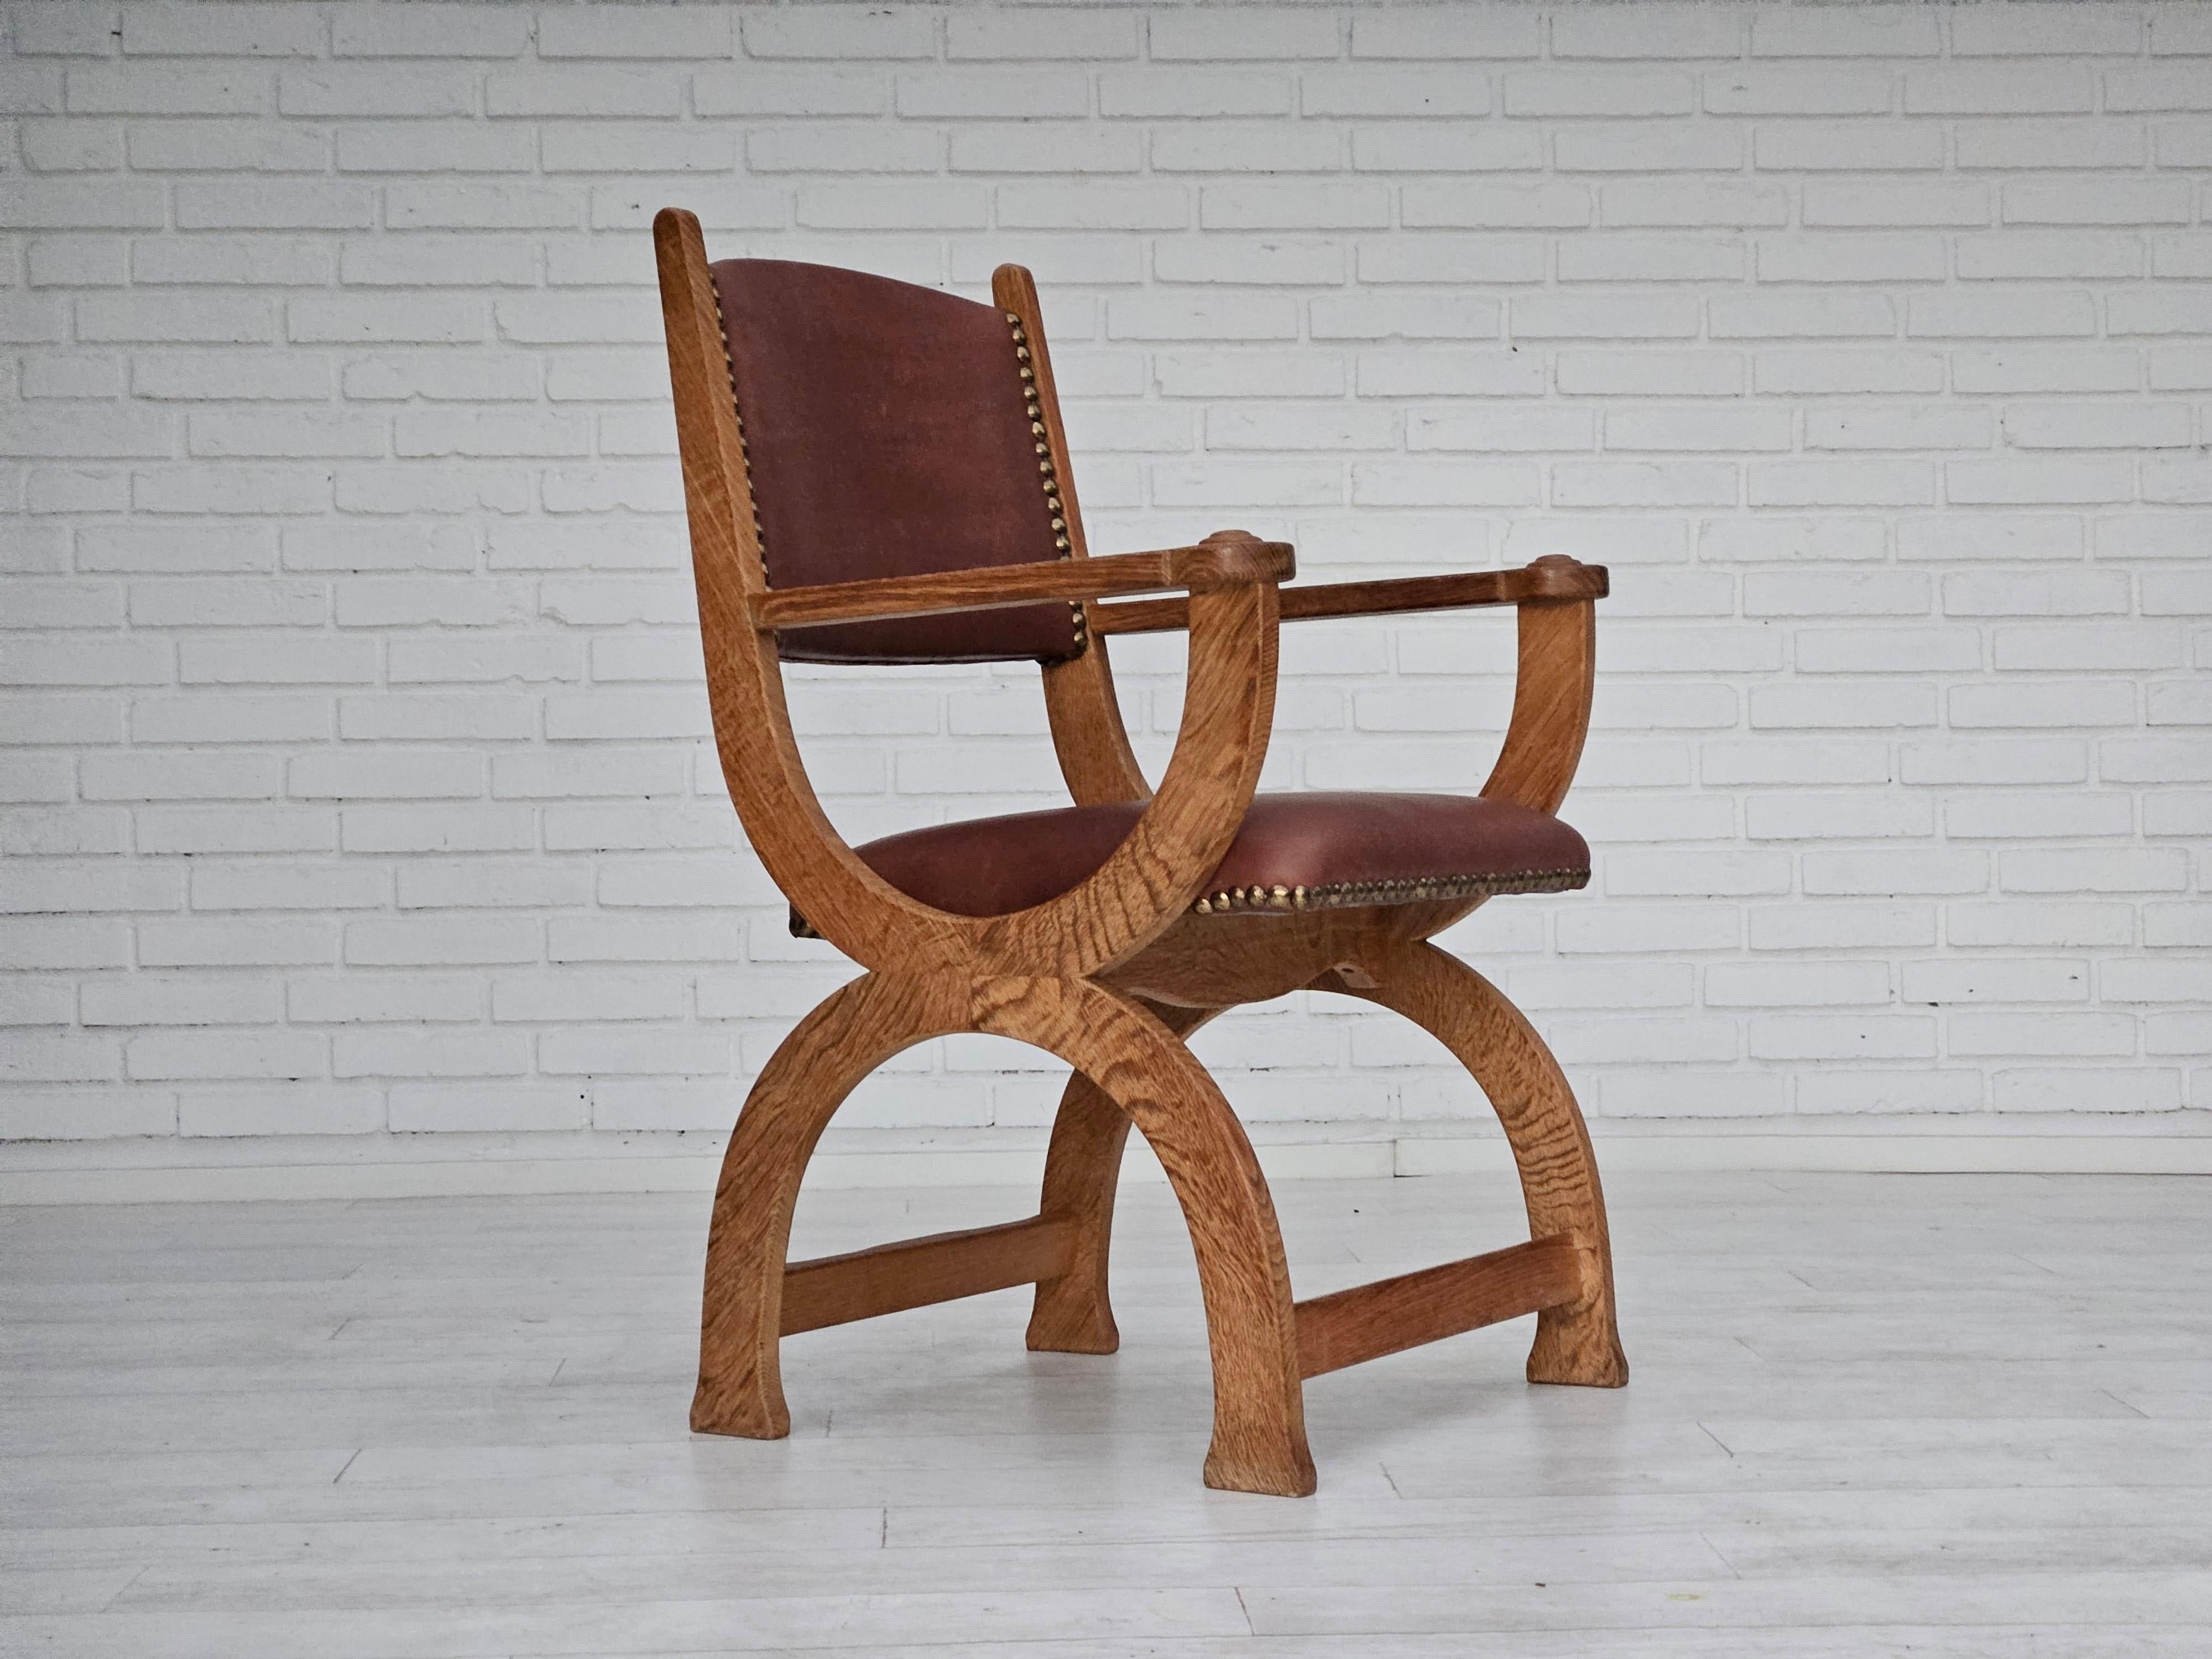 1950er Jahre, Dänisches Design. Neu gepolsterter Sessel aus hochwertigem naturbraunem Leder. Erneuertes Eichenholz. Hergestellt von einem dänischen Möbelhersteller in den Jahren um 1950. Von einem Handwerker neu gepolstert.